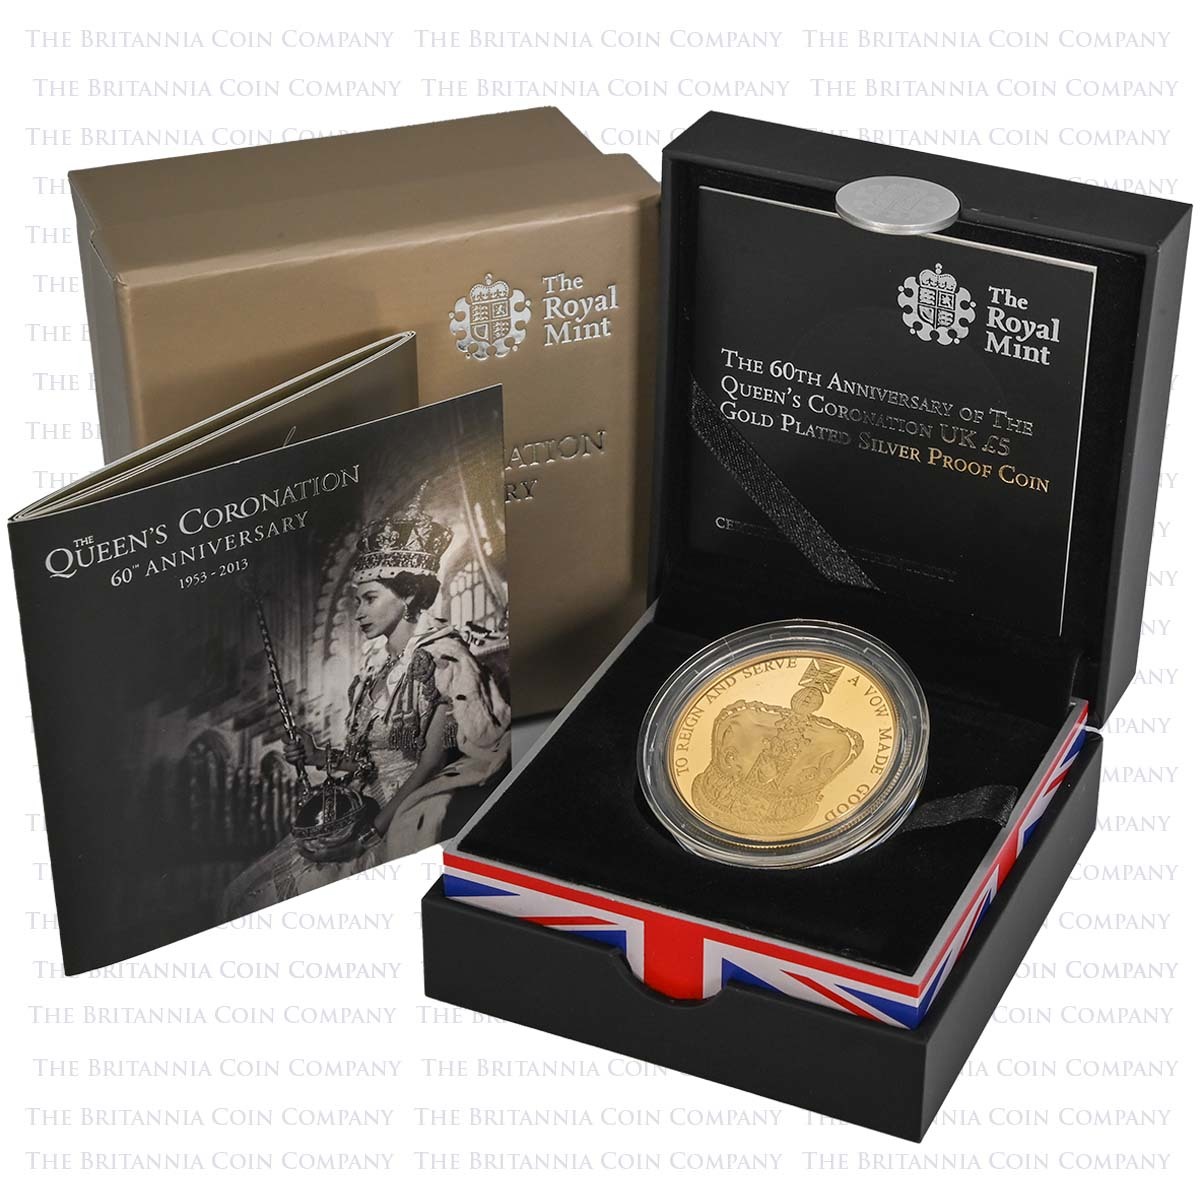 HM Queen Elizabeth II Coronation 1953-2013 Collectors Coin In Presentation Box 